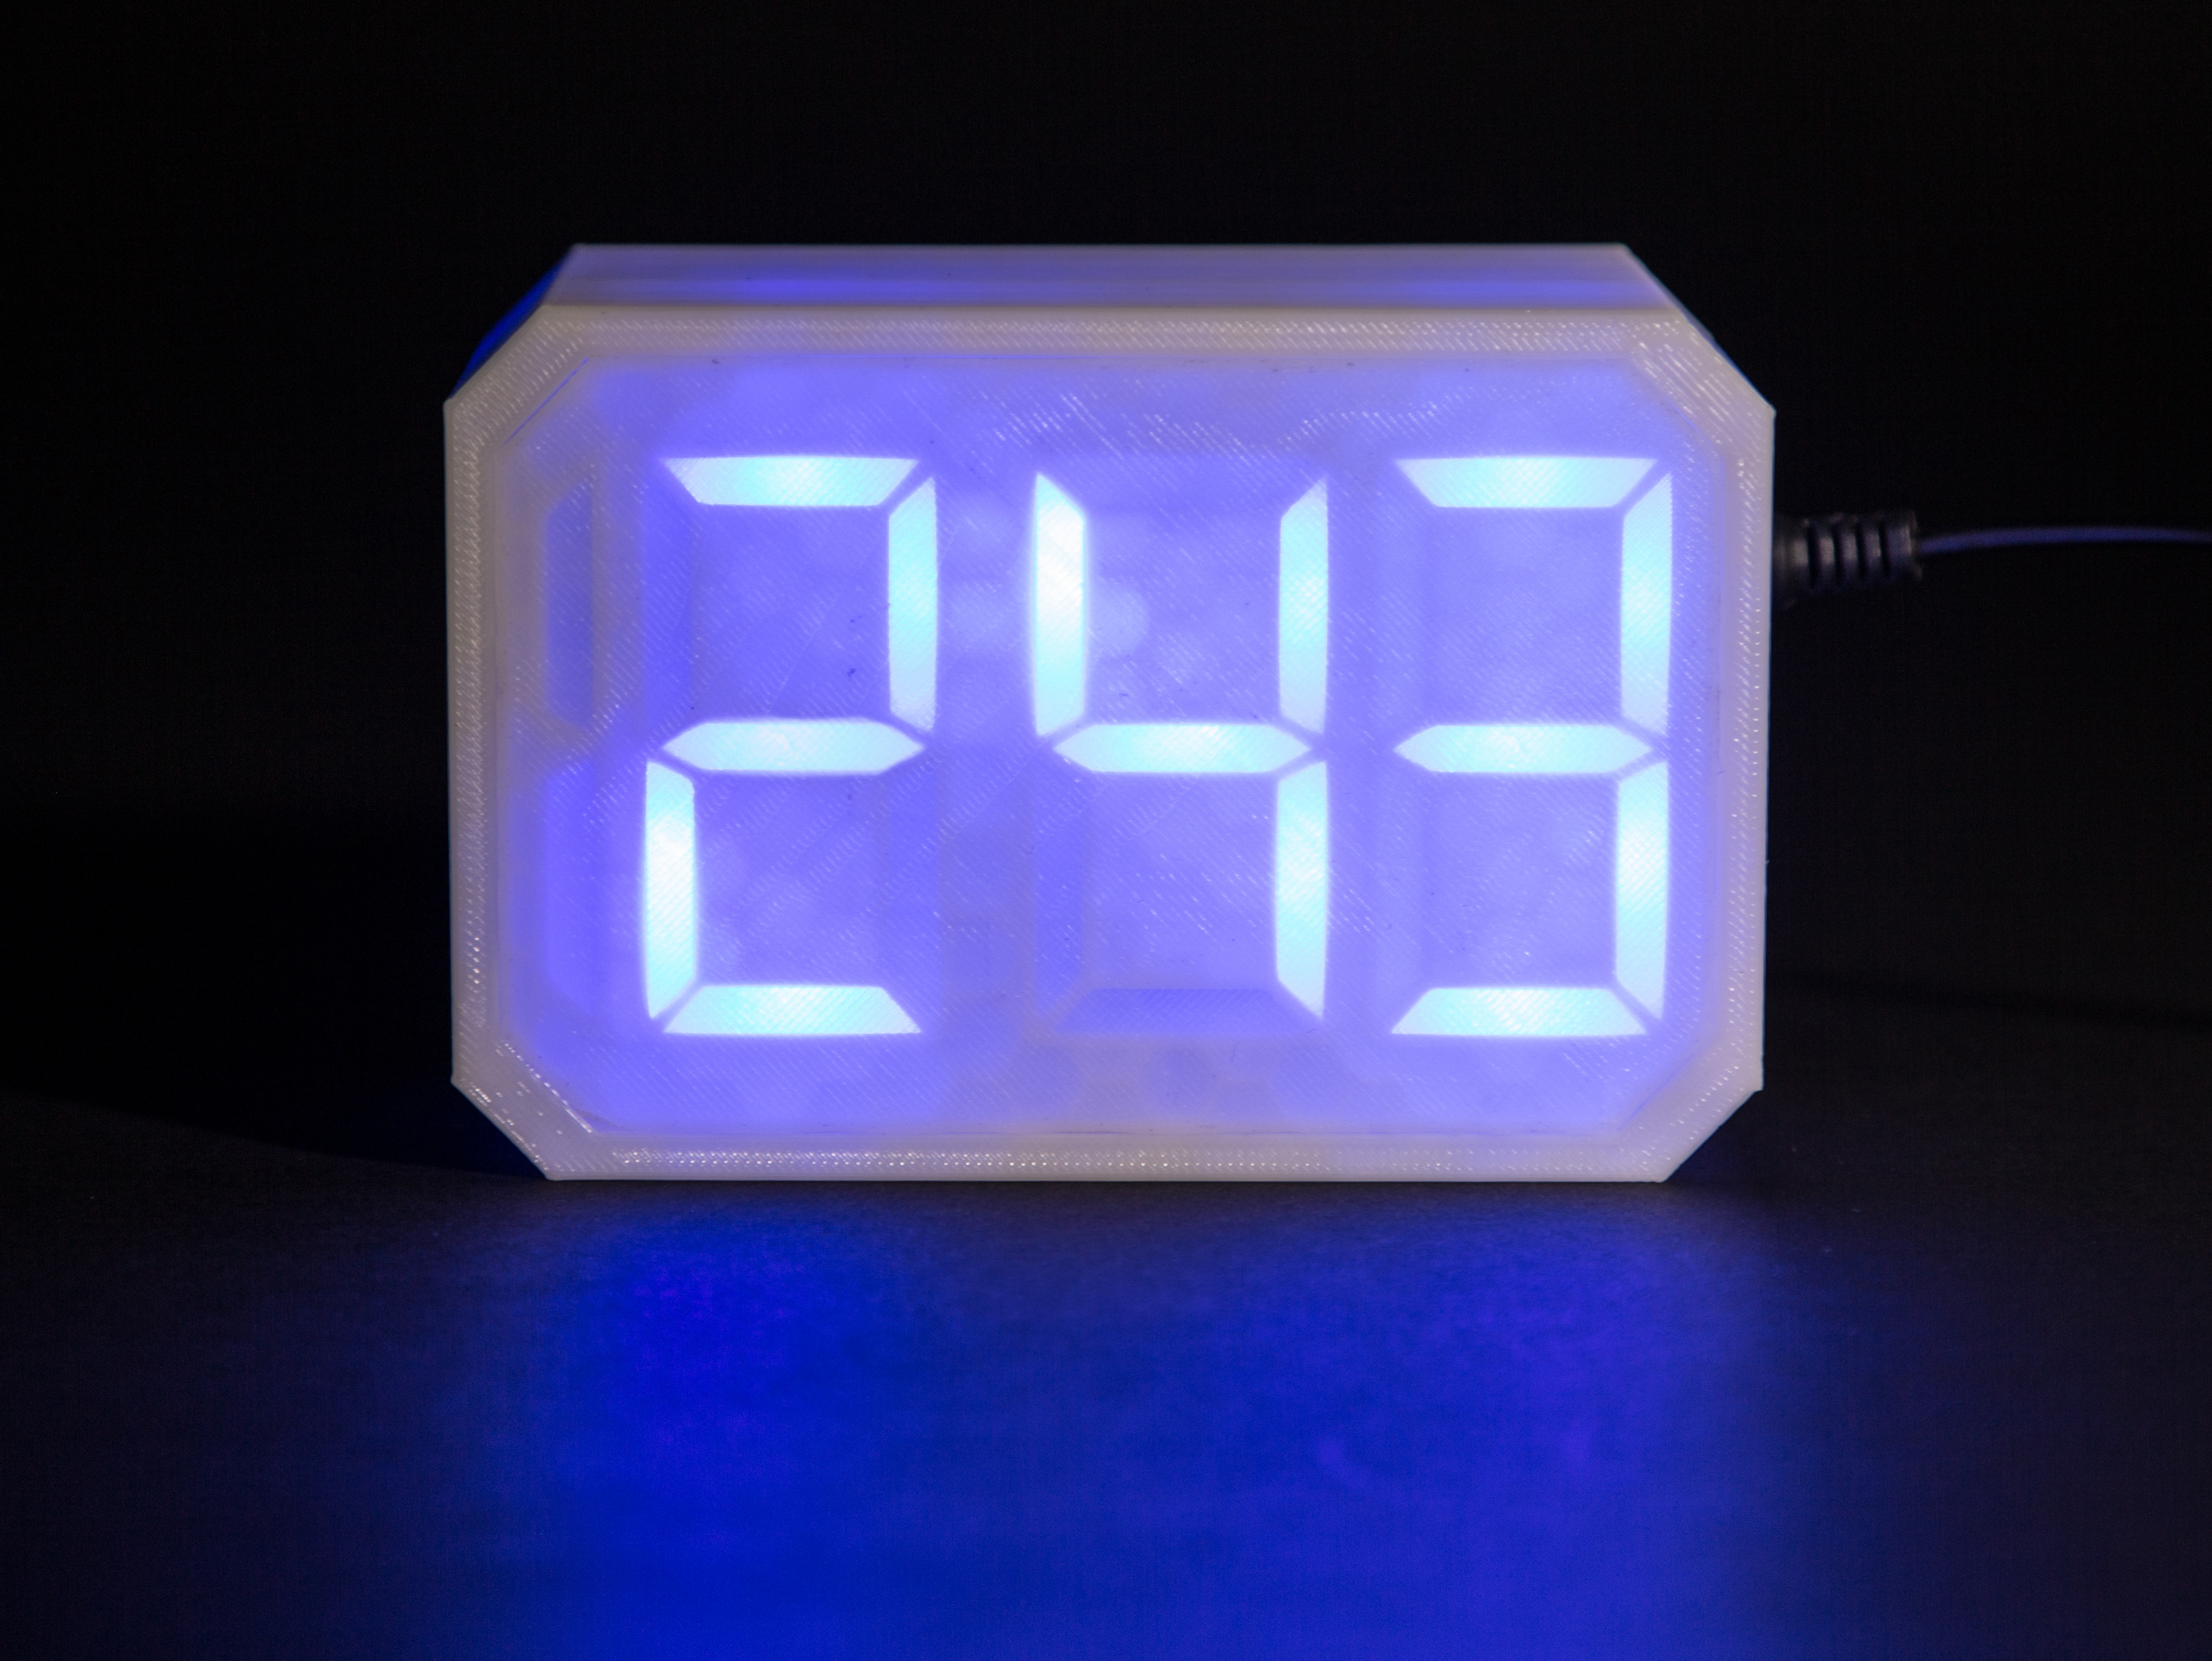 3D Print a Supersized Seven-Segment Clock